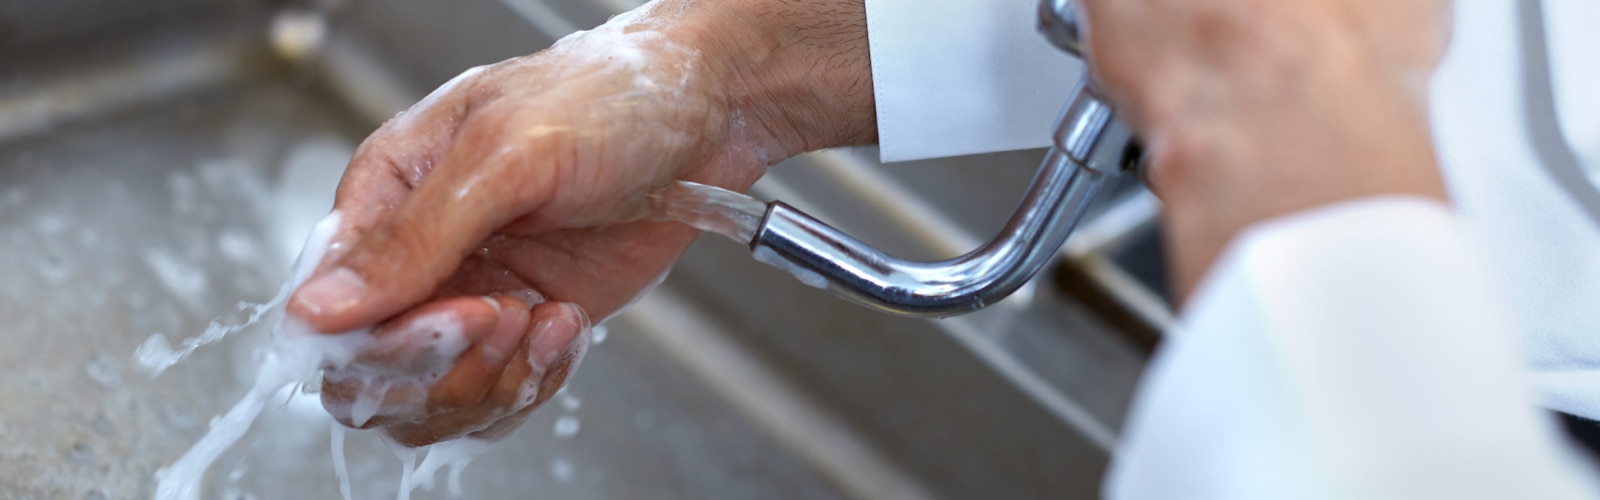 Spălatul pe mâini în restaurate și în cadrul serviciilor de alimentație